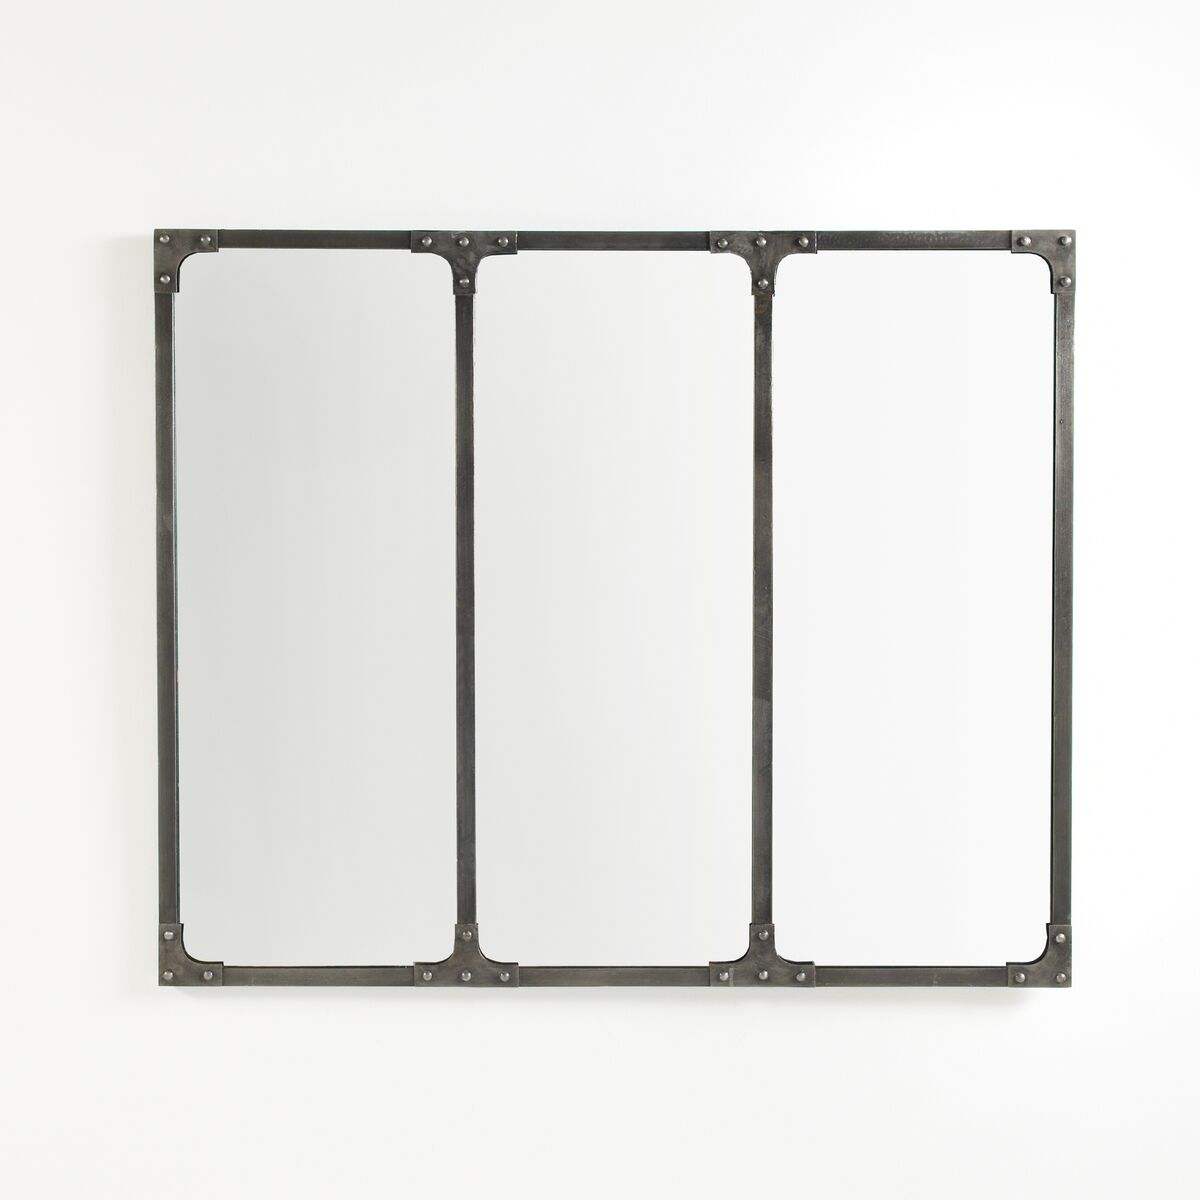 LA REDOUTE INTERIEURS Miroir métal industriel 120x100 cm, Lenaig